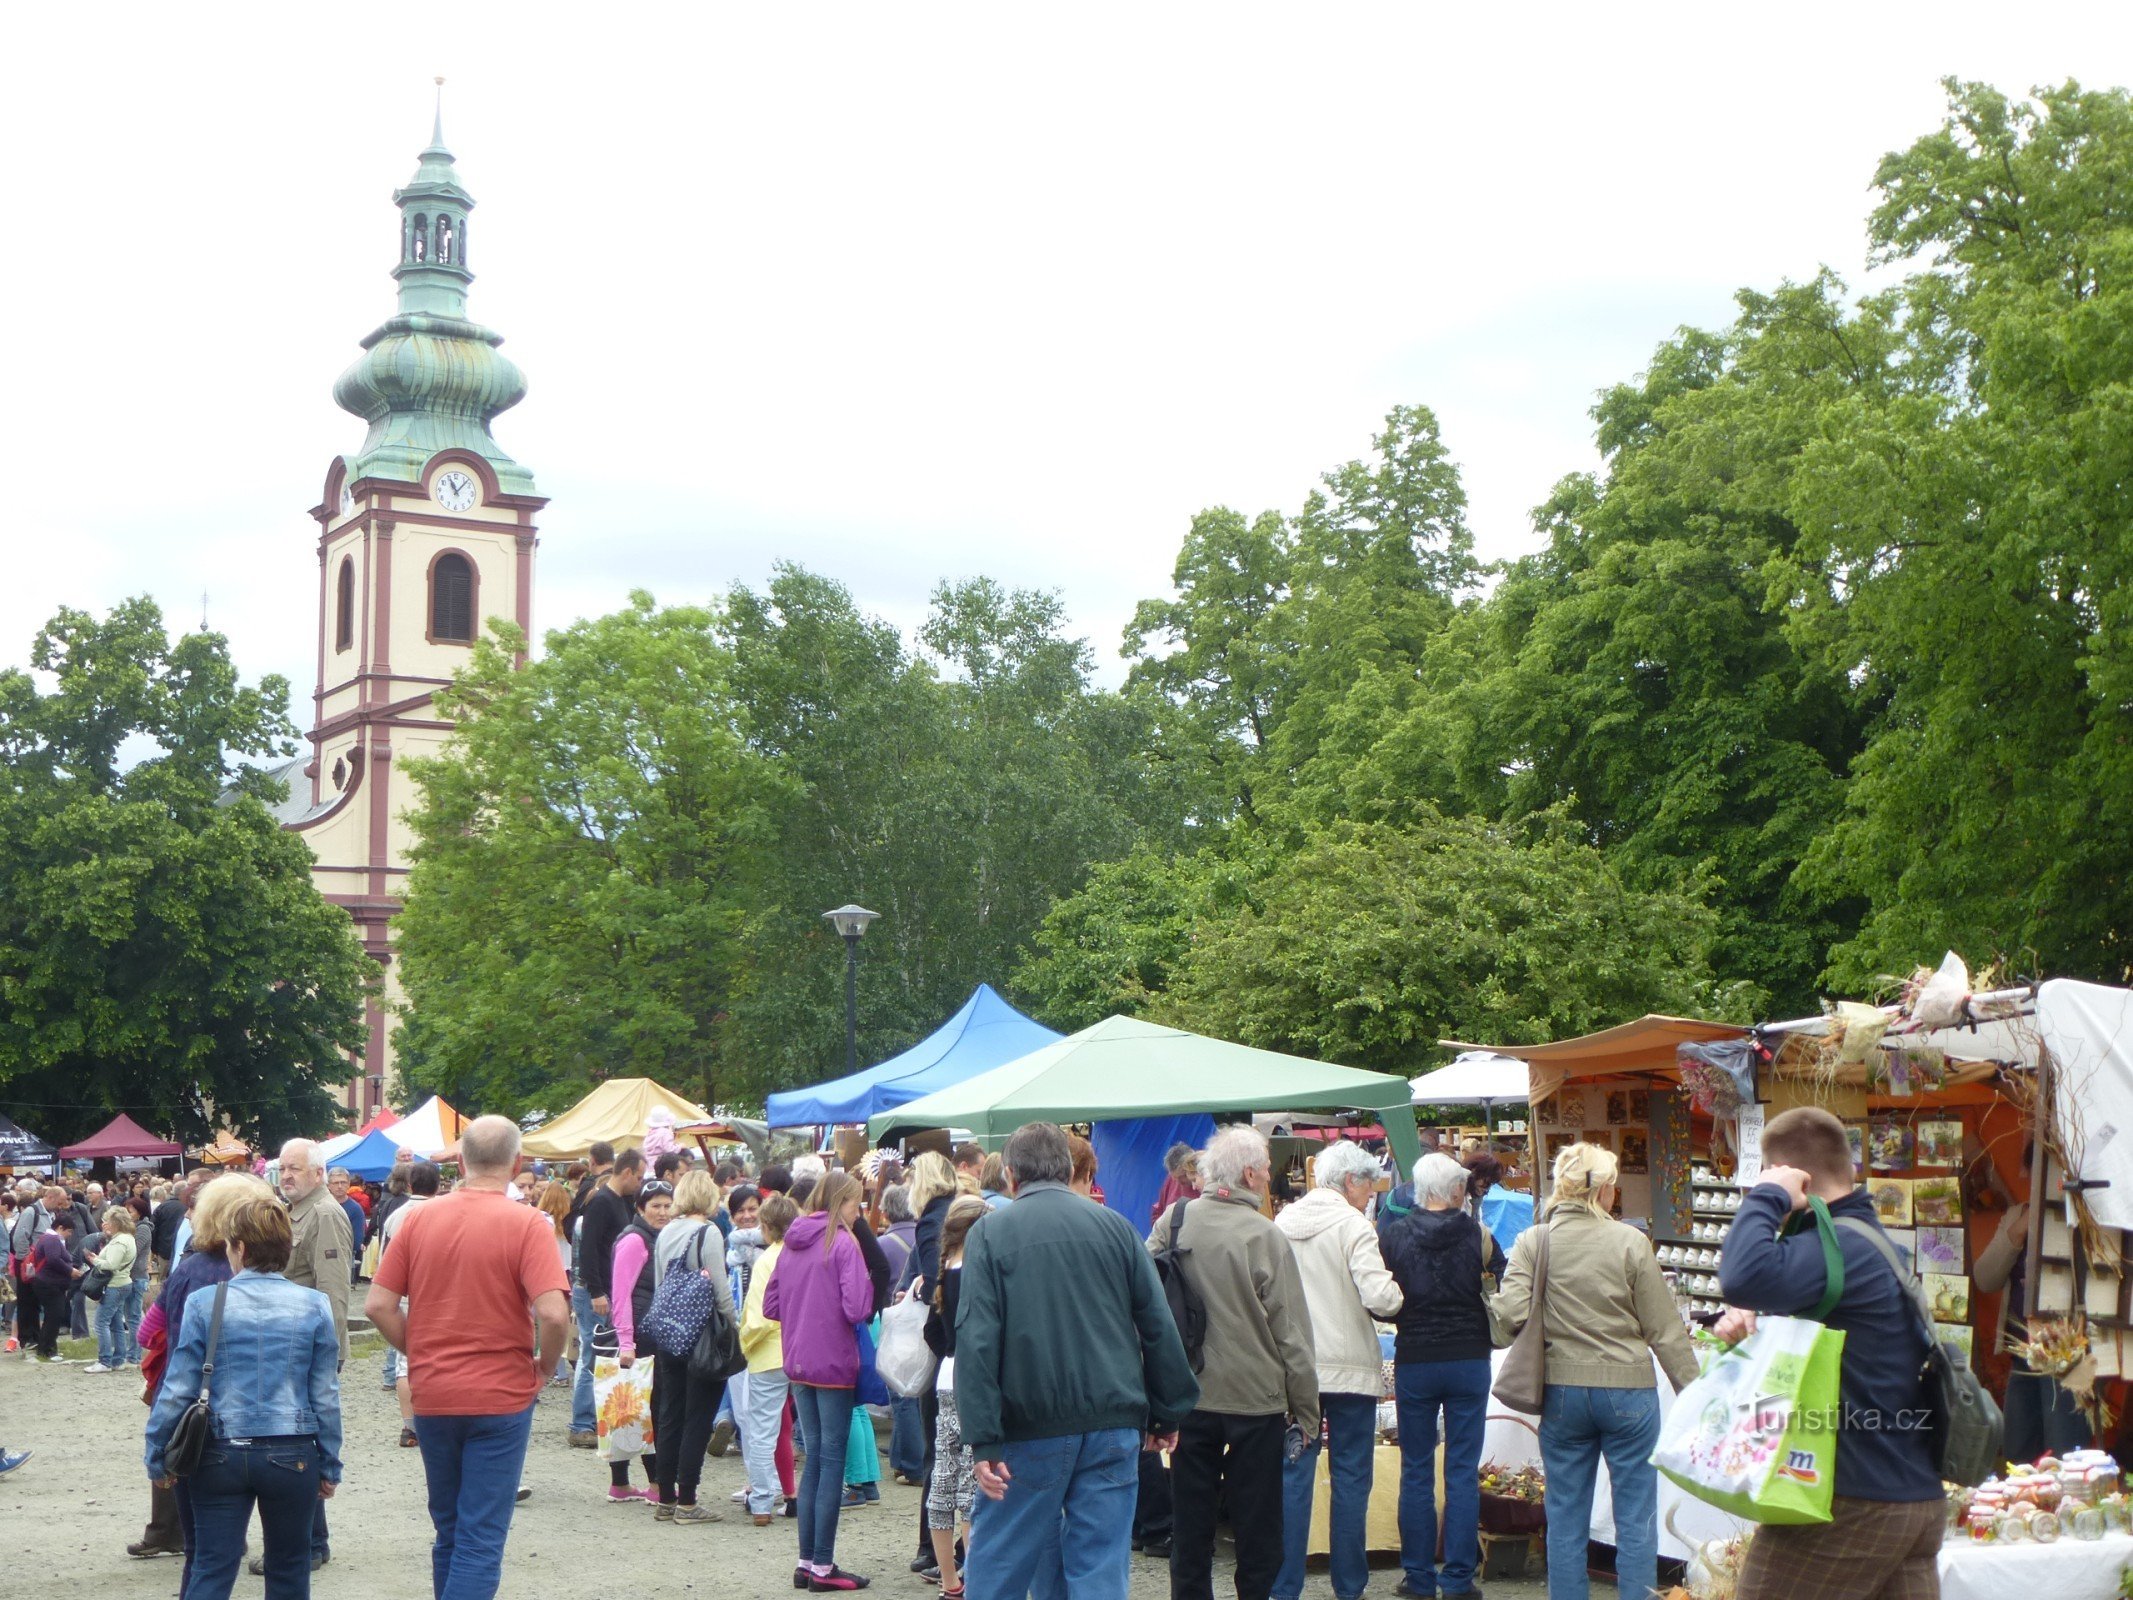 Journée de la céramique traditionnelle - Náměstí Smiřické, en arrière-plan l'église de St. Anges gardiens